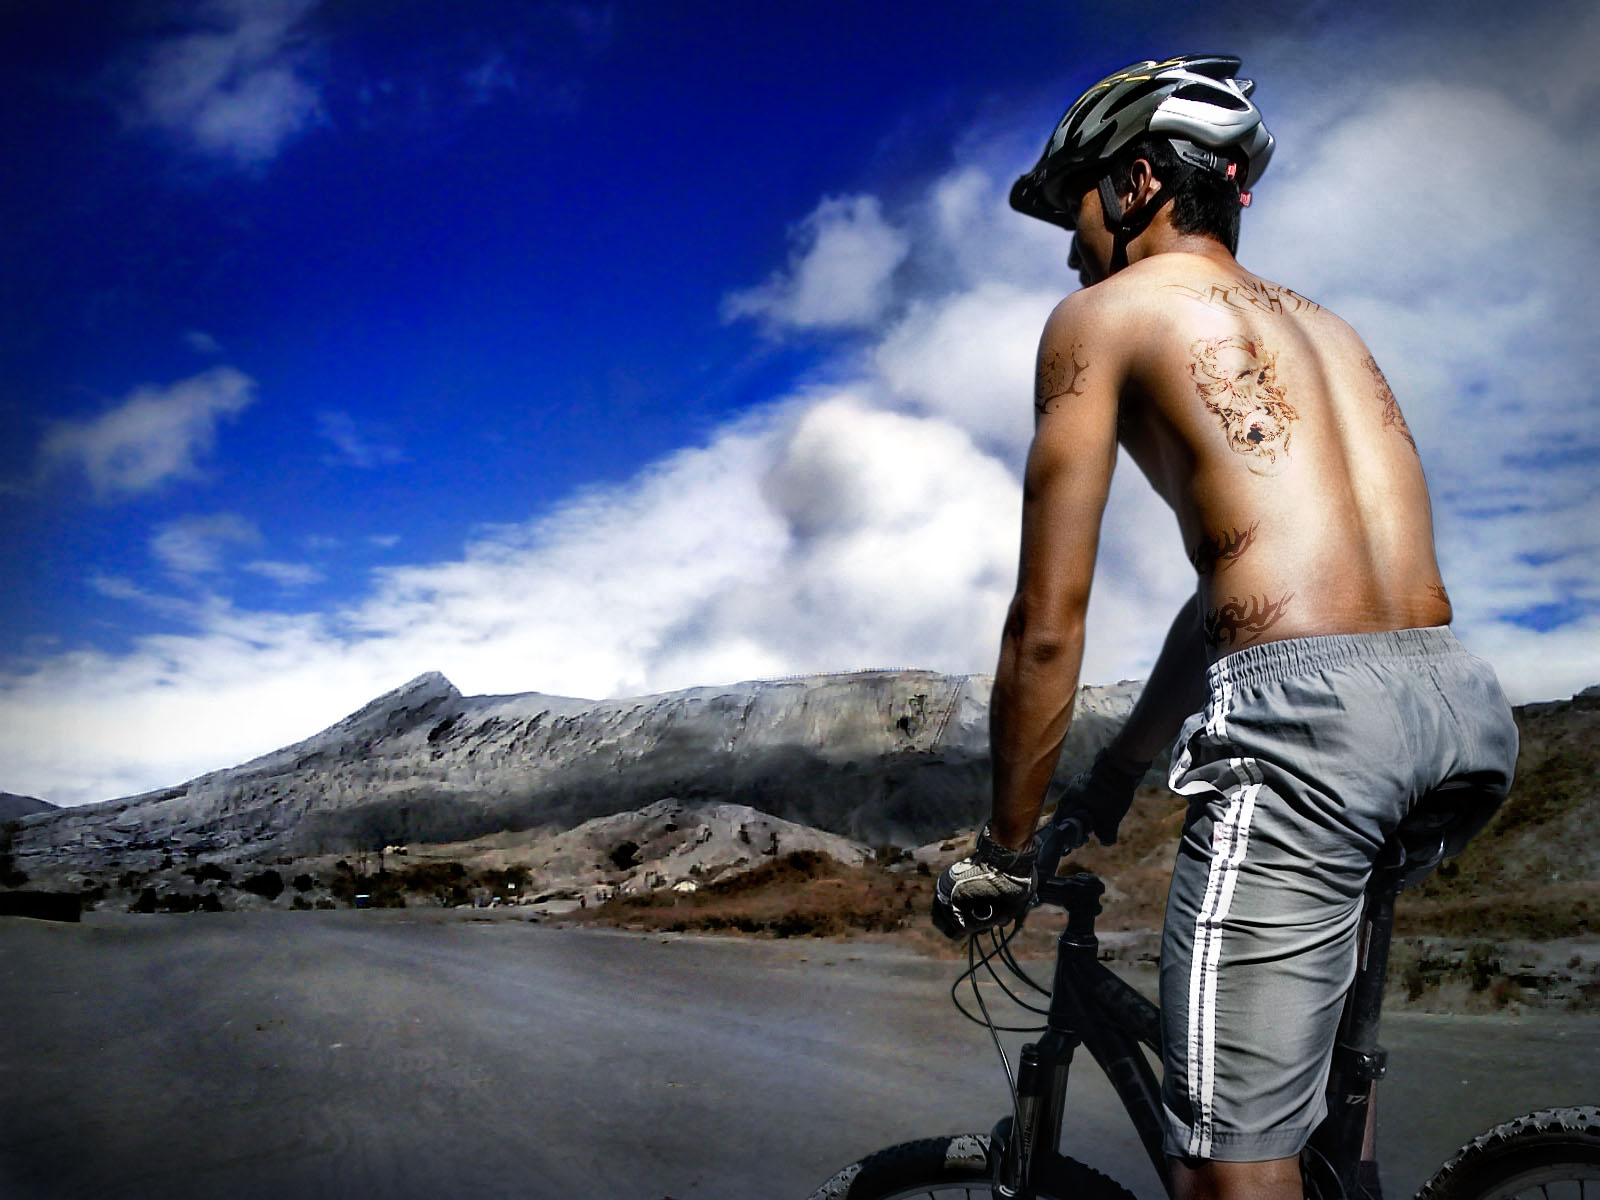 Bicycle, Biker, Blue, Boy, Bspo07, Cloud, Desert, Helmet, Male, Man, Mounta...